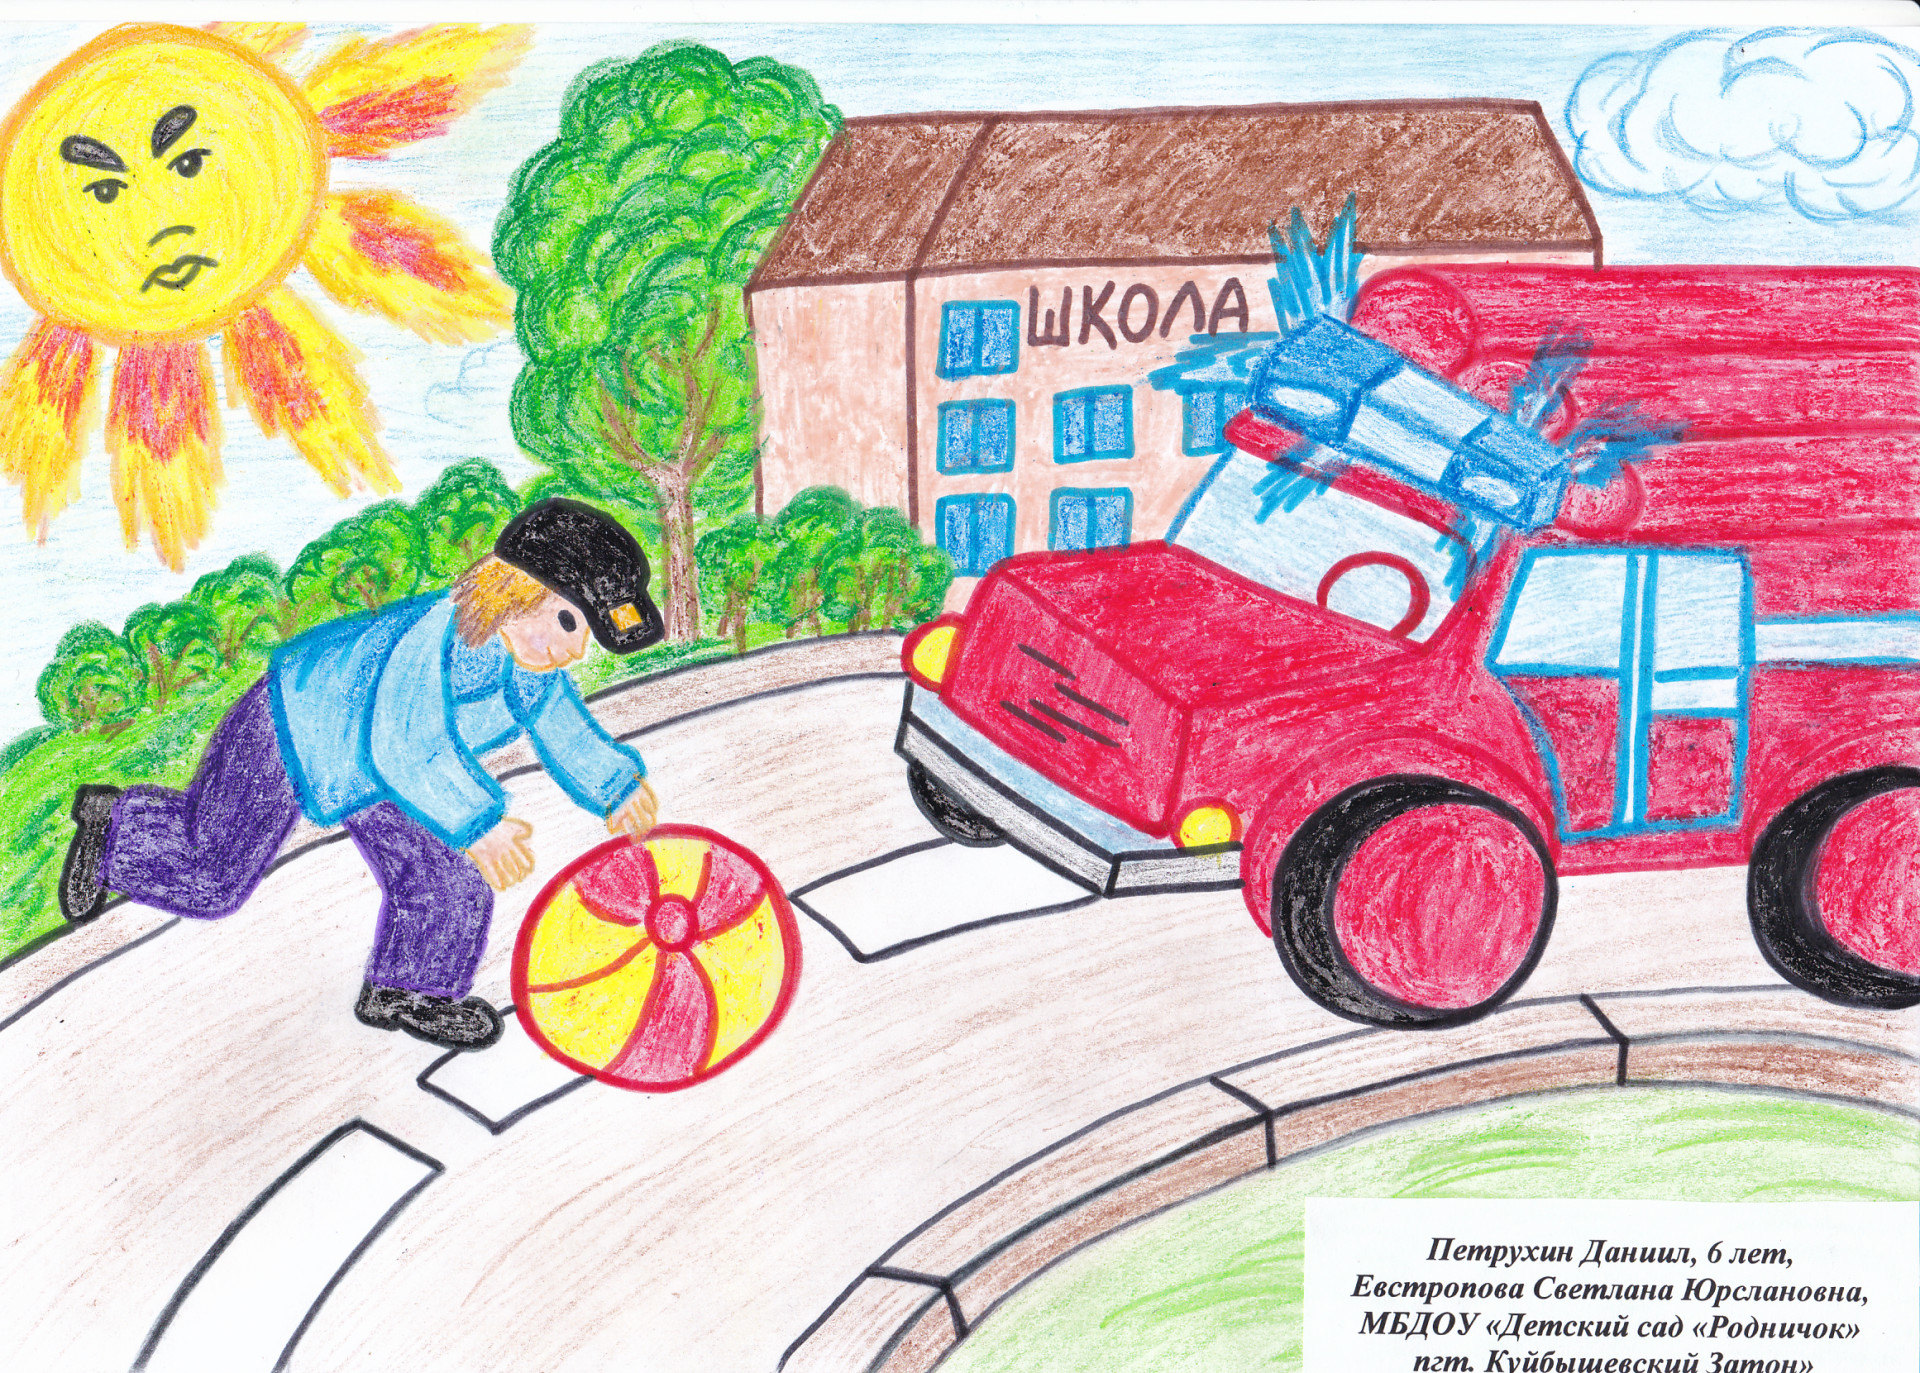 Подведены итоги конкурса рисунков «Безопасность глазами детей» среди воспитанников детских садов